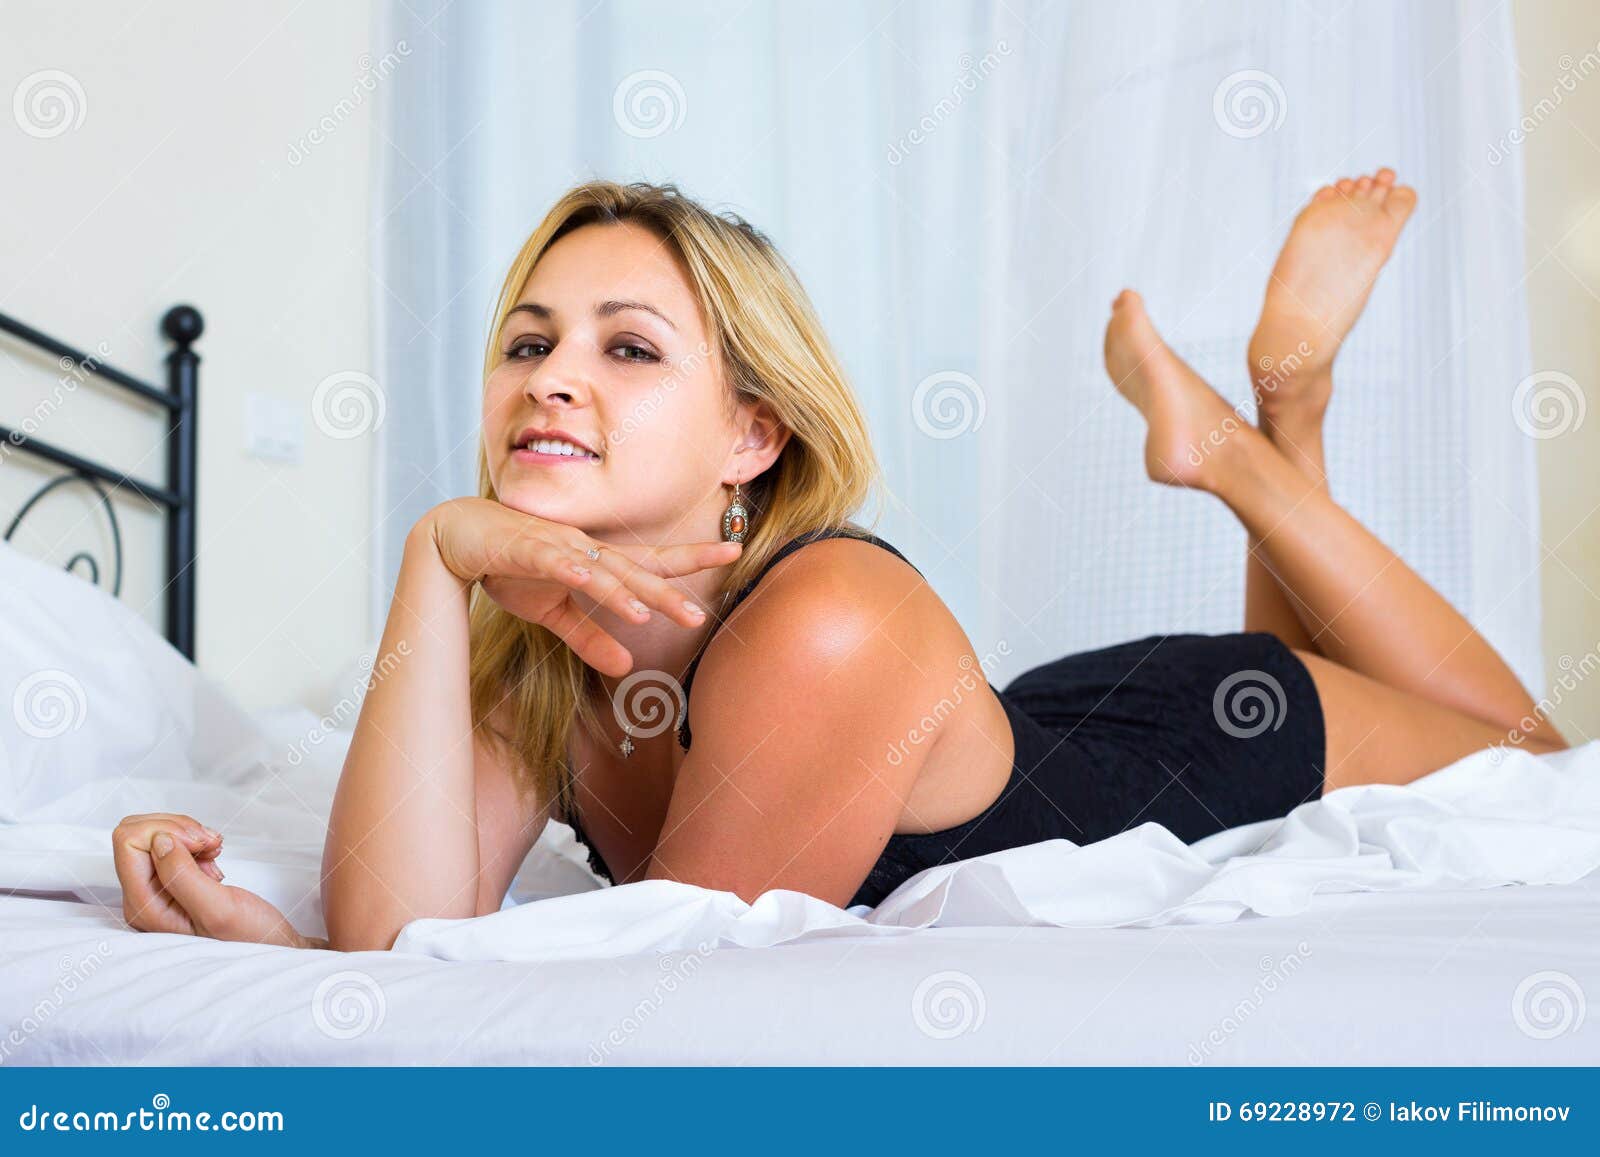 Nude Women In Bedroom